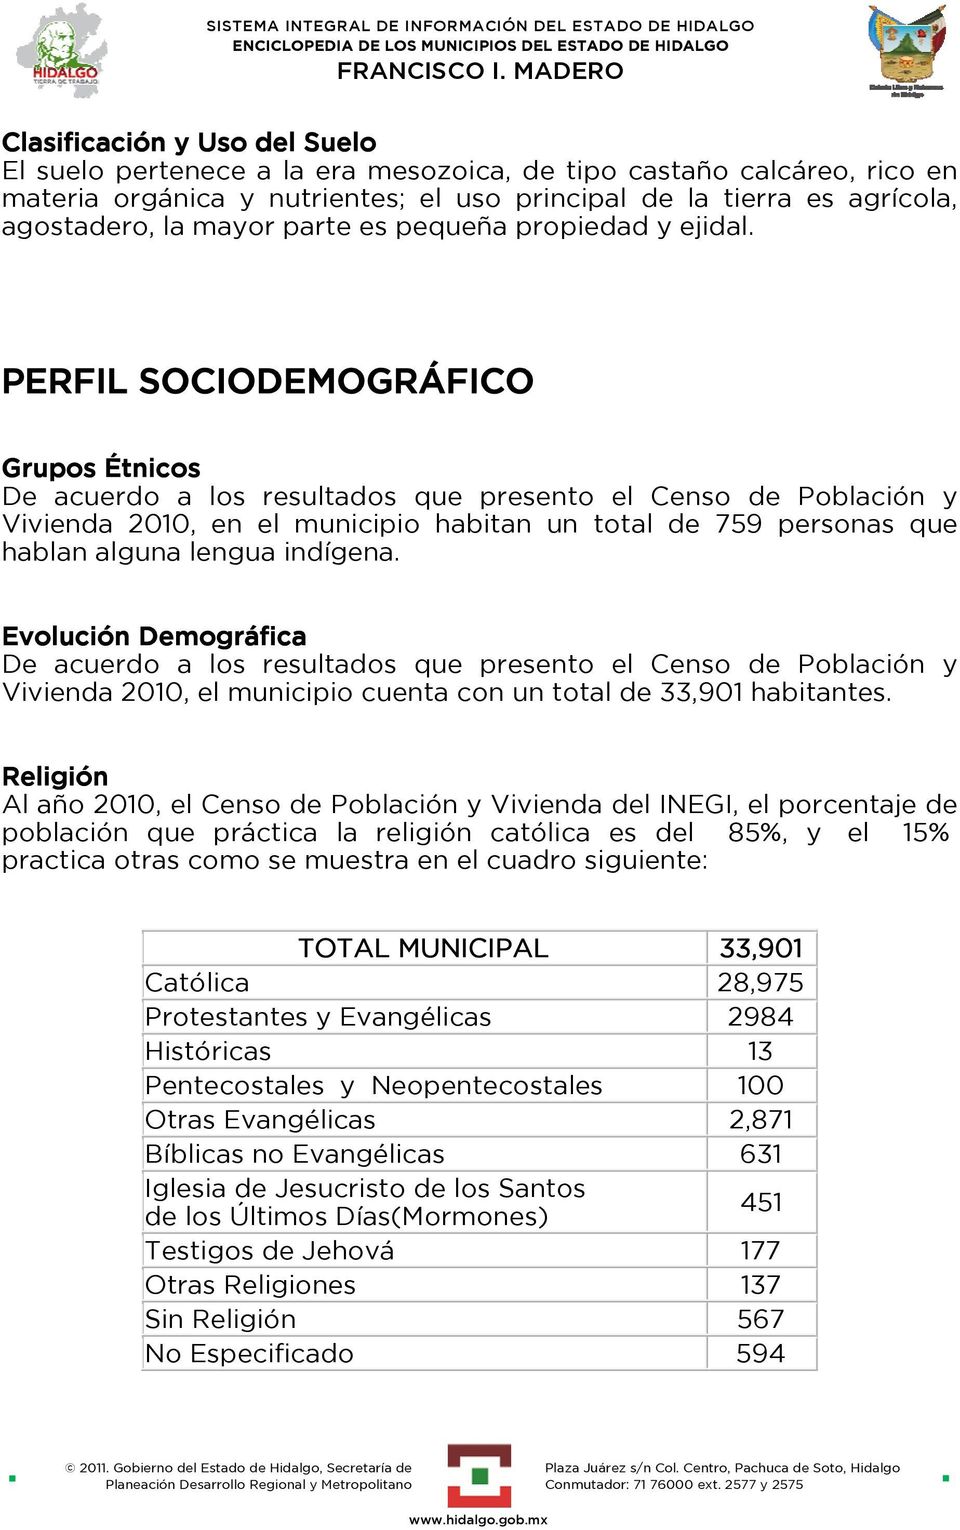 PERFIL SOCIODEMOGRÁFICO Grupos Étnicos De acuerdo a los resultados que presento el Censo de Población y Vivienda 2010, en el municipio habitan un total de 759 personas que hablan alguna lengua